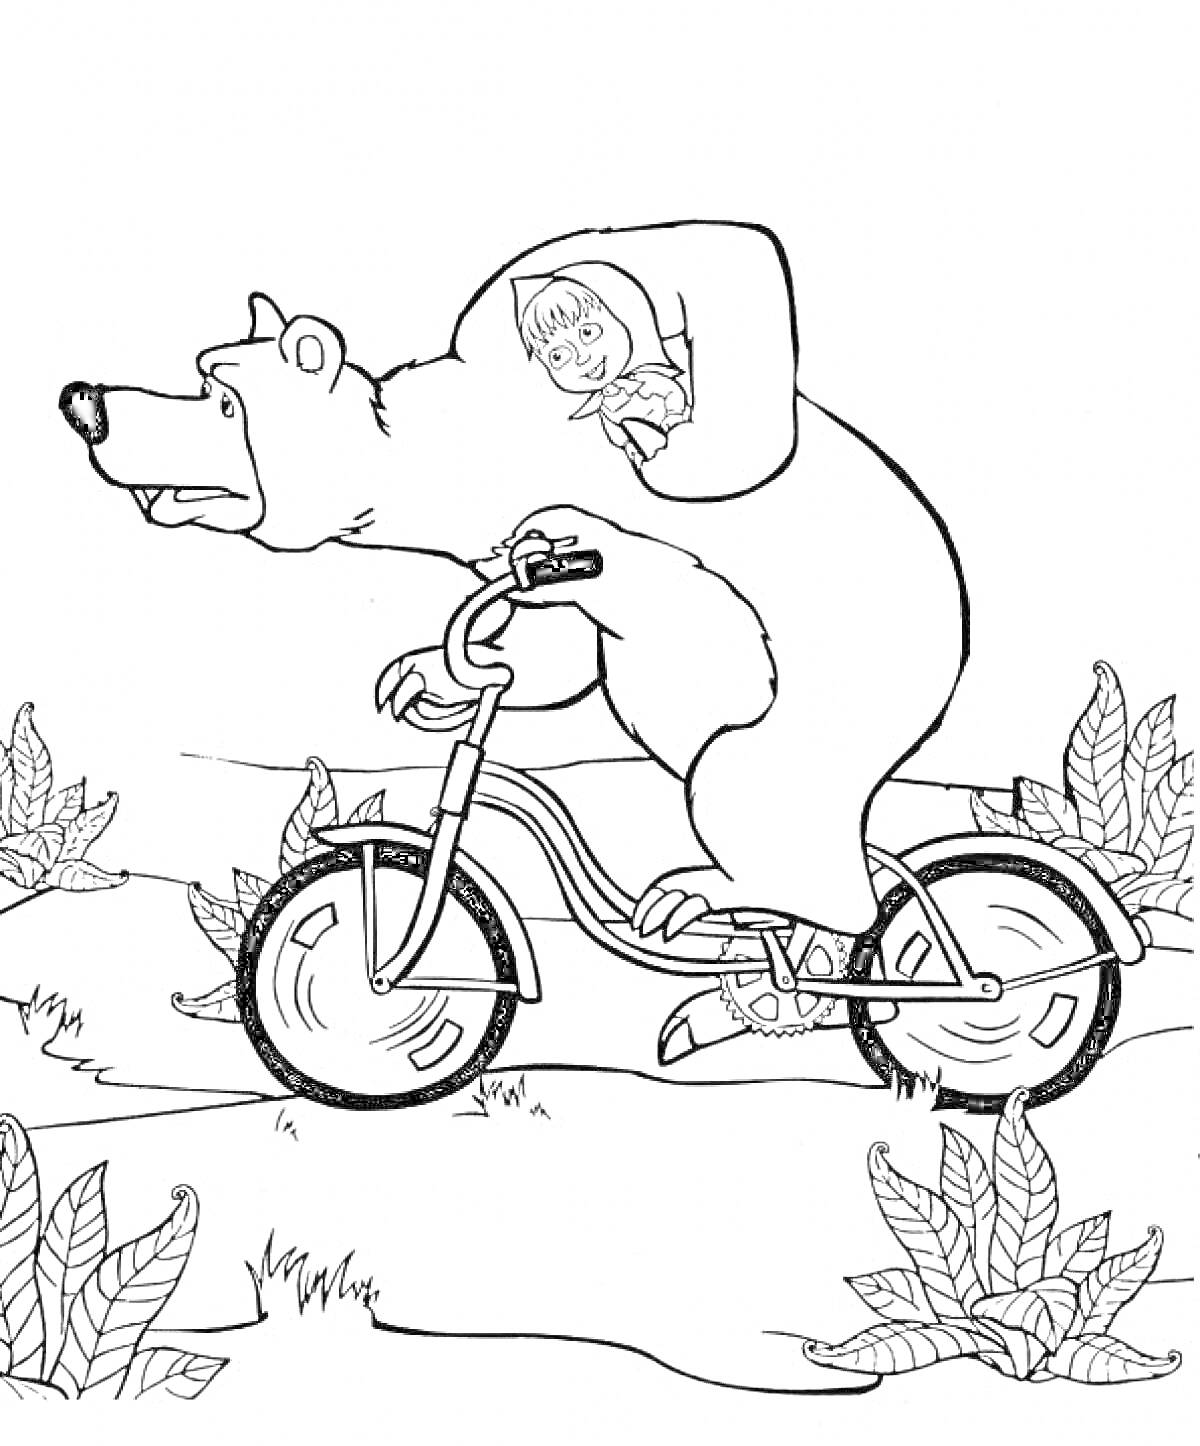 Раскраска Маша на спине Медведя, едущего на велосипеде, кусты на заднем плане